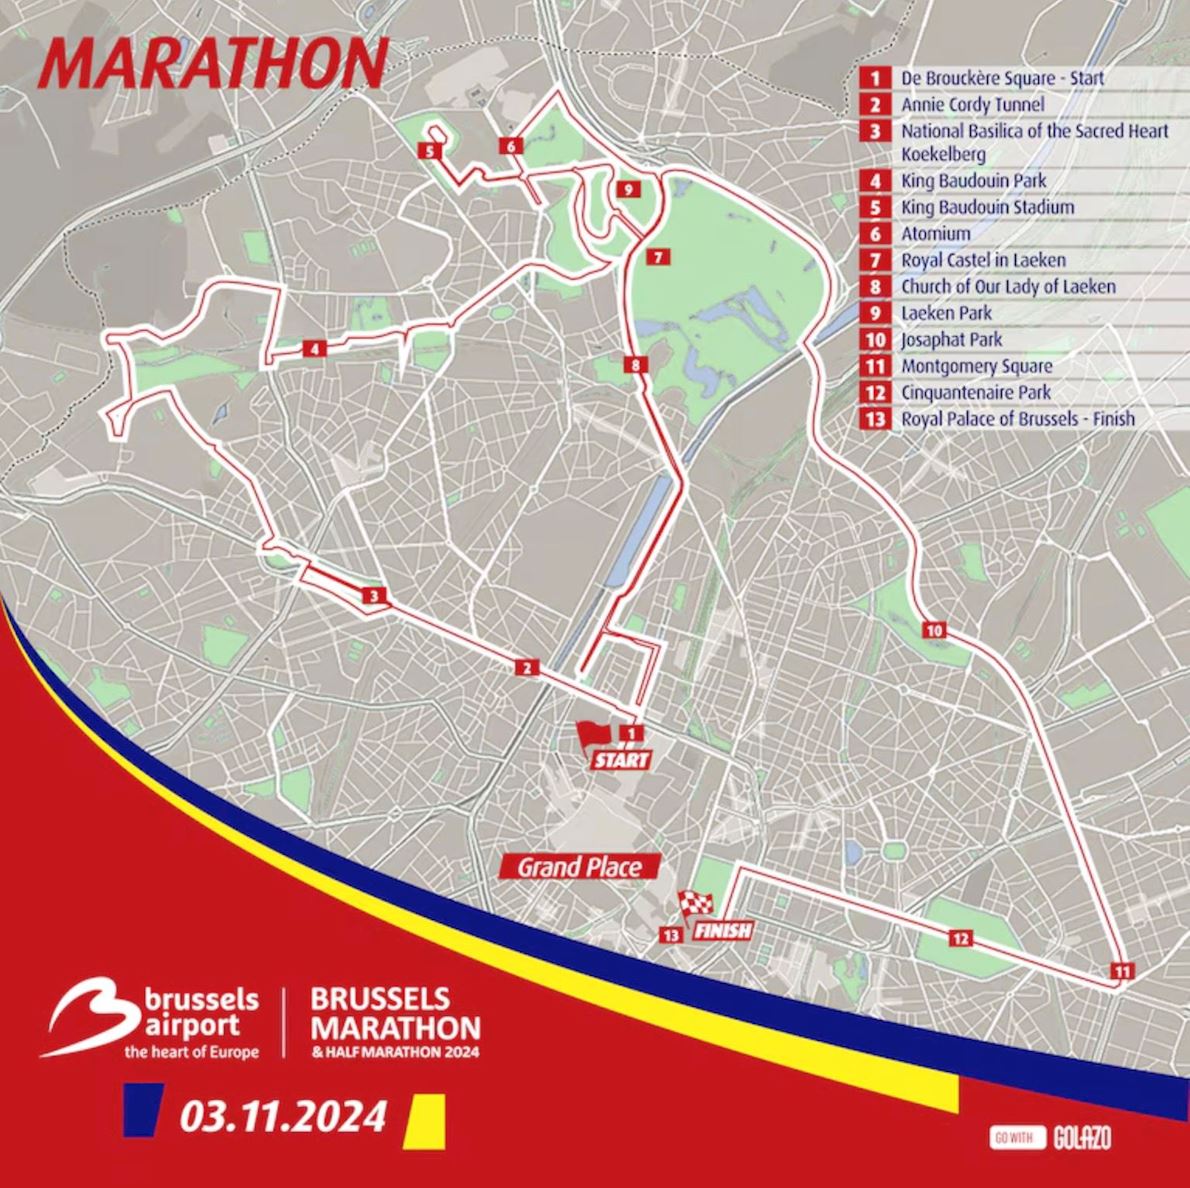 Brussels Airport Brussels Marathon & Half Marathon Route Map